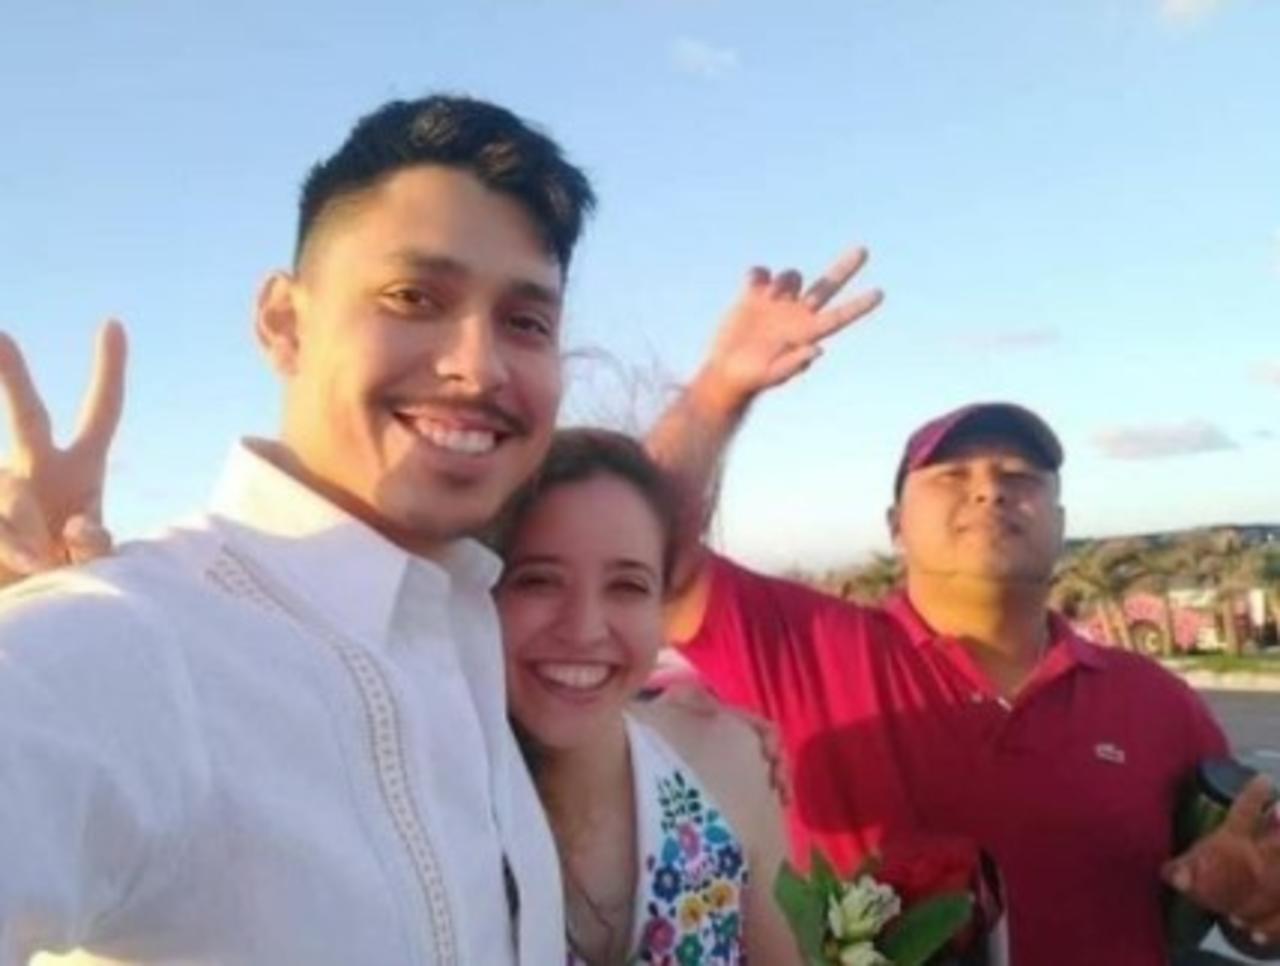 Él es Fabián, un joven originario de Cancún, Quintana Roo que se volvió viral luego de que una pareja compartiera su inolvidable experiencia con él. 
